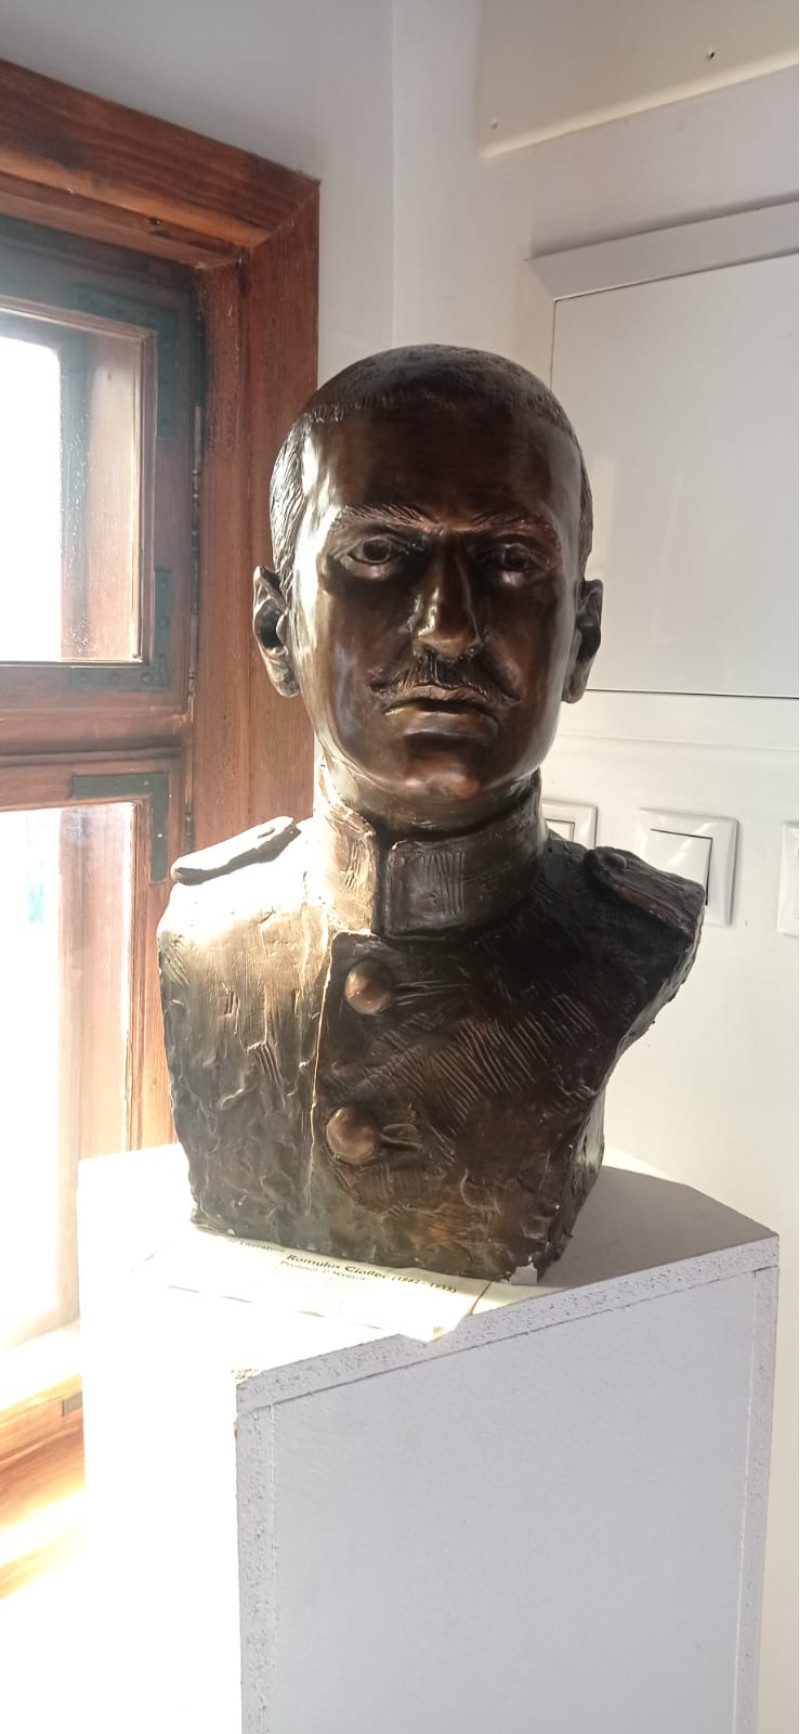 Acest bust reprezintă scriitorul Romulus Ciflec, al cărui nume are onoarea să îl poarte și școala noastră. A fost un om de valoare și ne mândrim cu el!